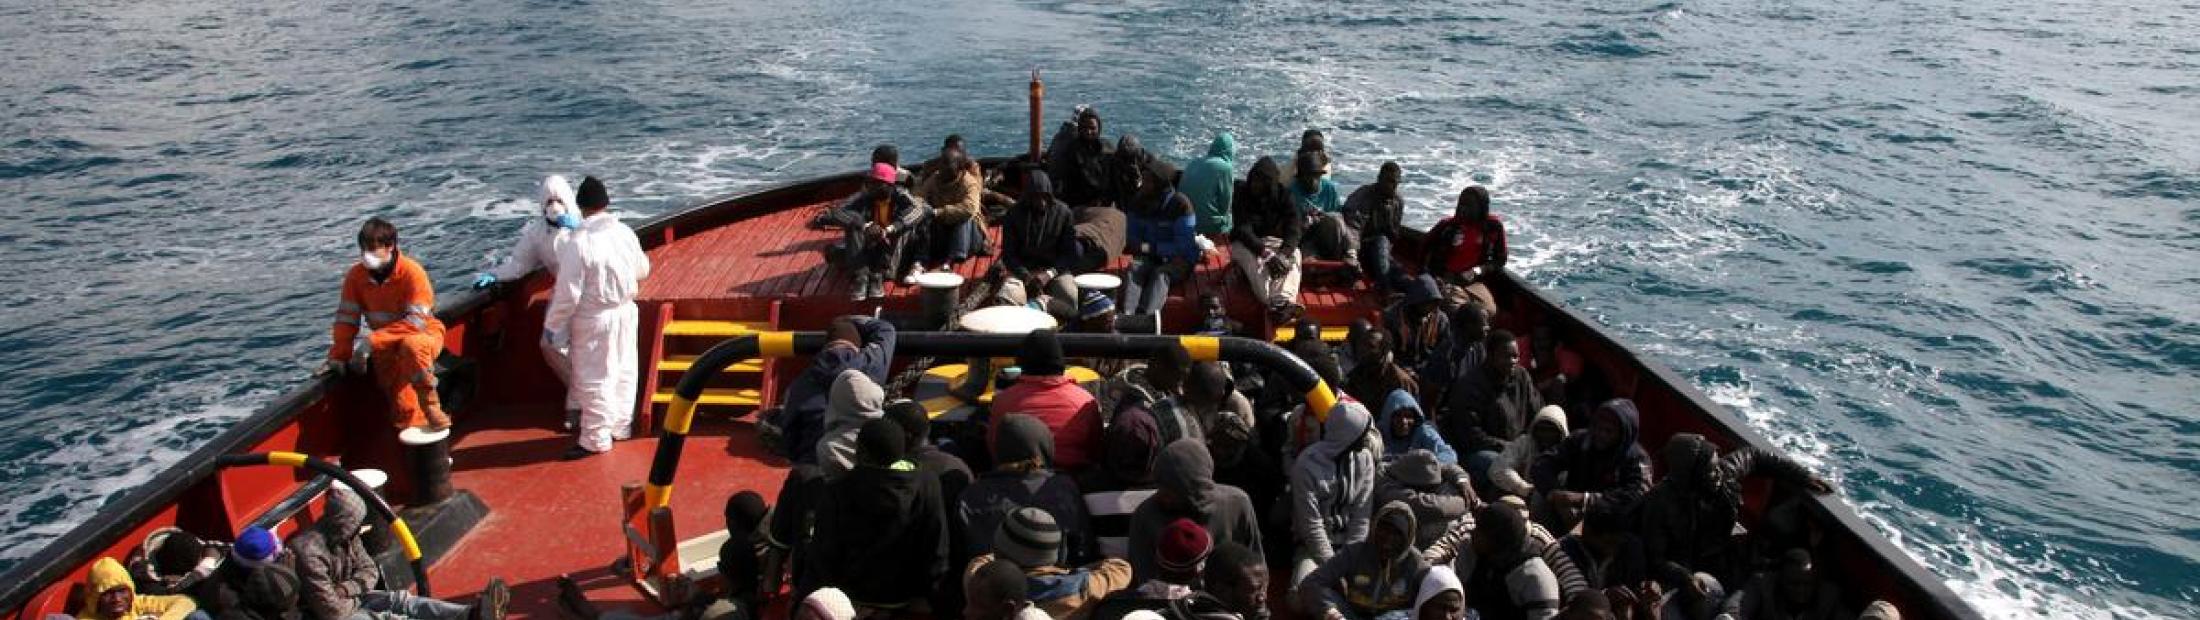 Migrantes y refugiados, ¿qué diferencia hay? ACNUR responde